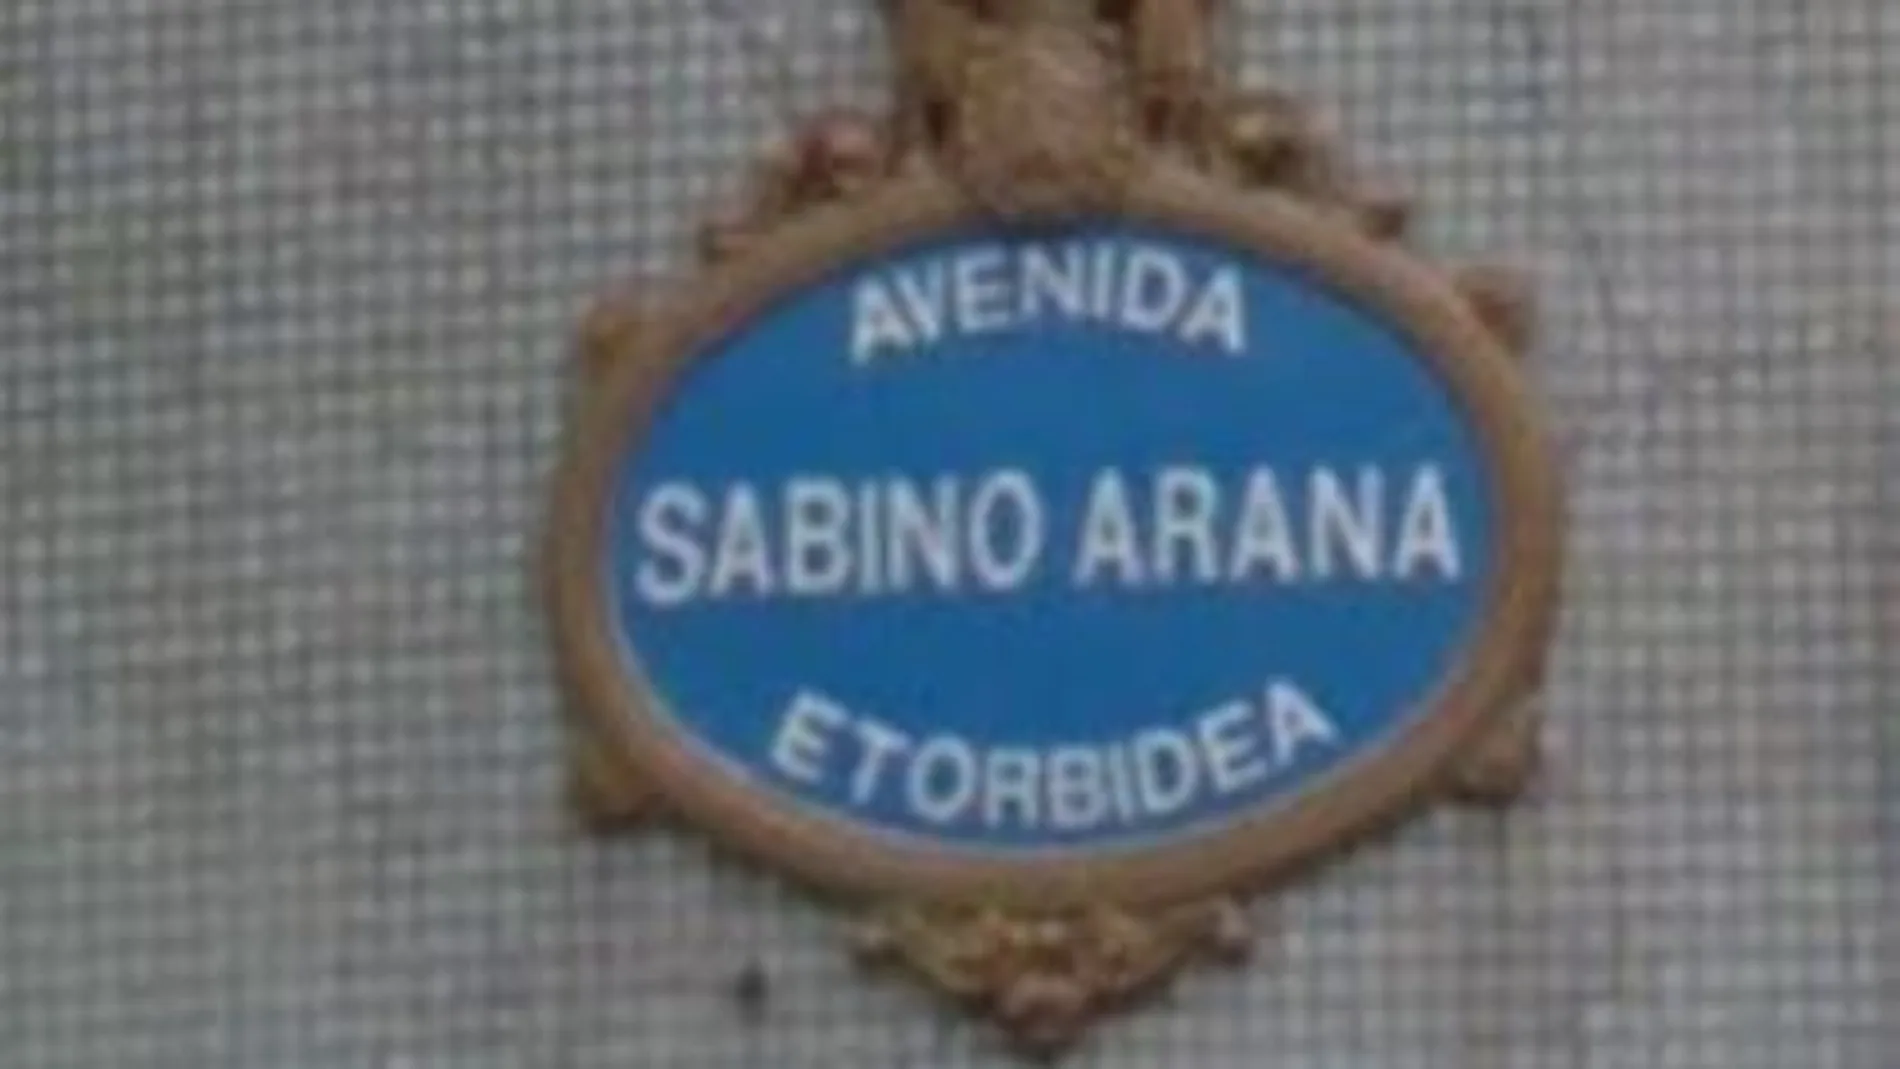 Letrero de la Avenida Sabino Arana en Bilbao